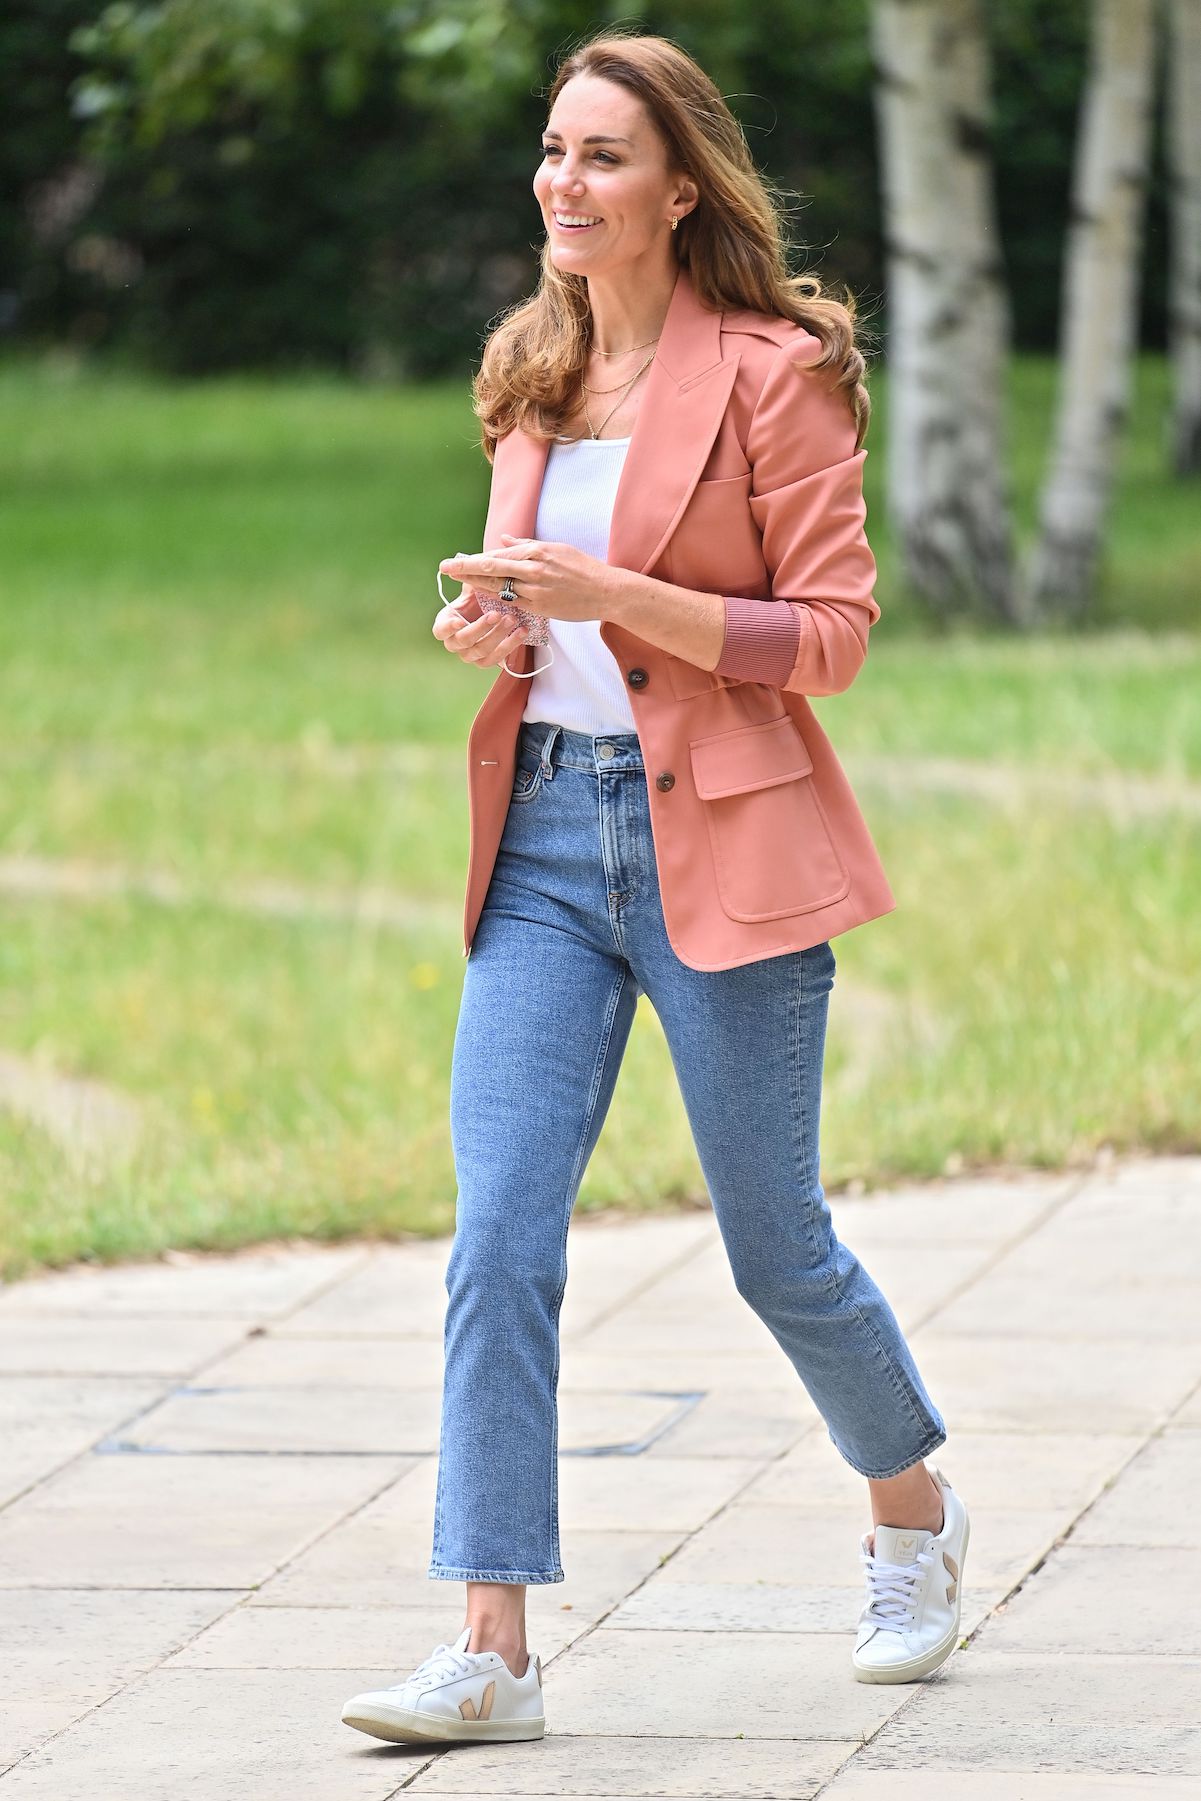 Kate Middleton in her favorite Veja sneakers in June 2021